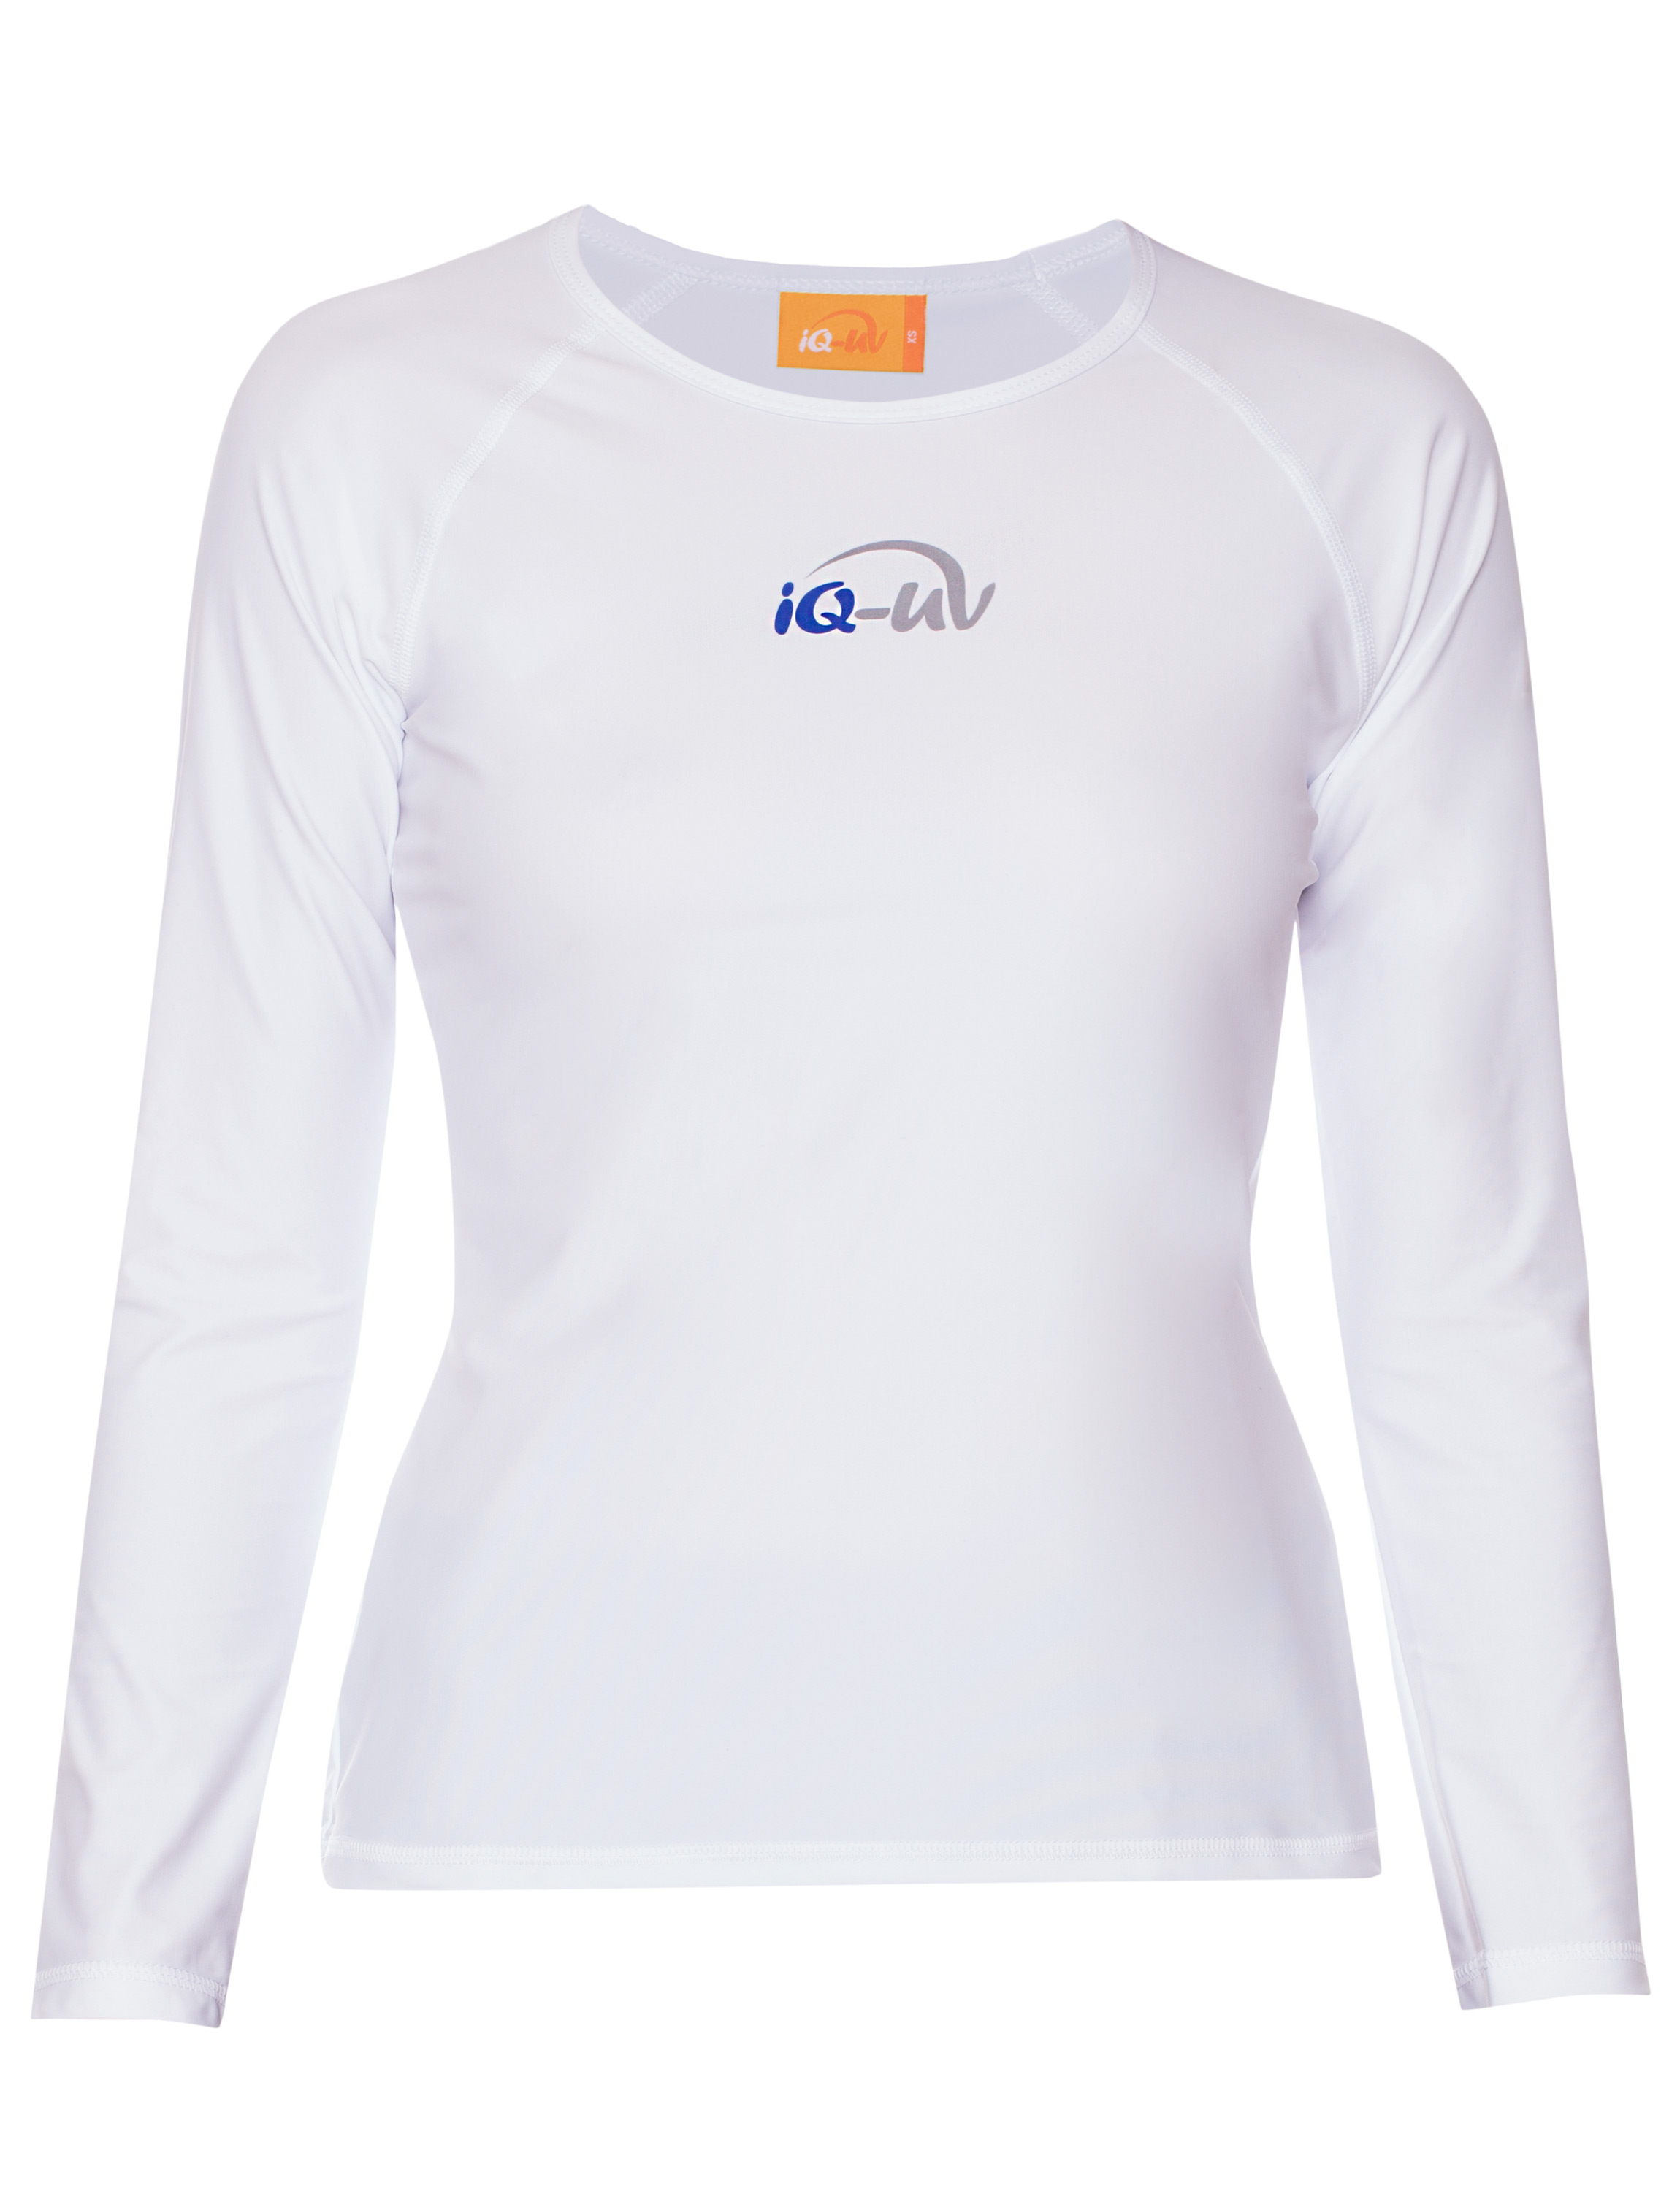 UV Wassersport Langarm T-Shirt weiß